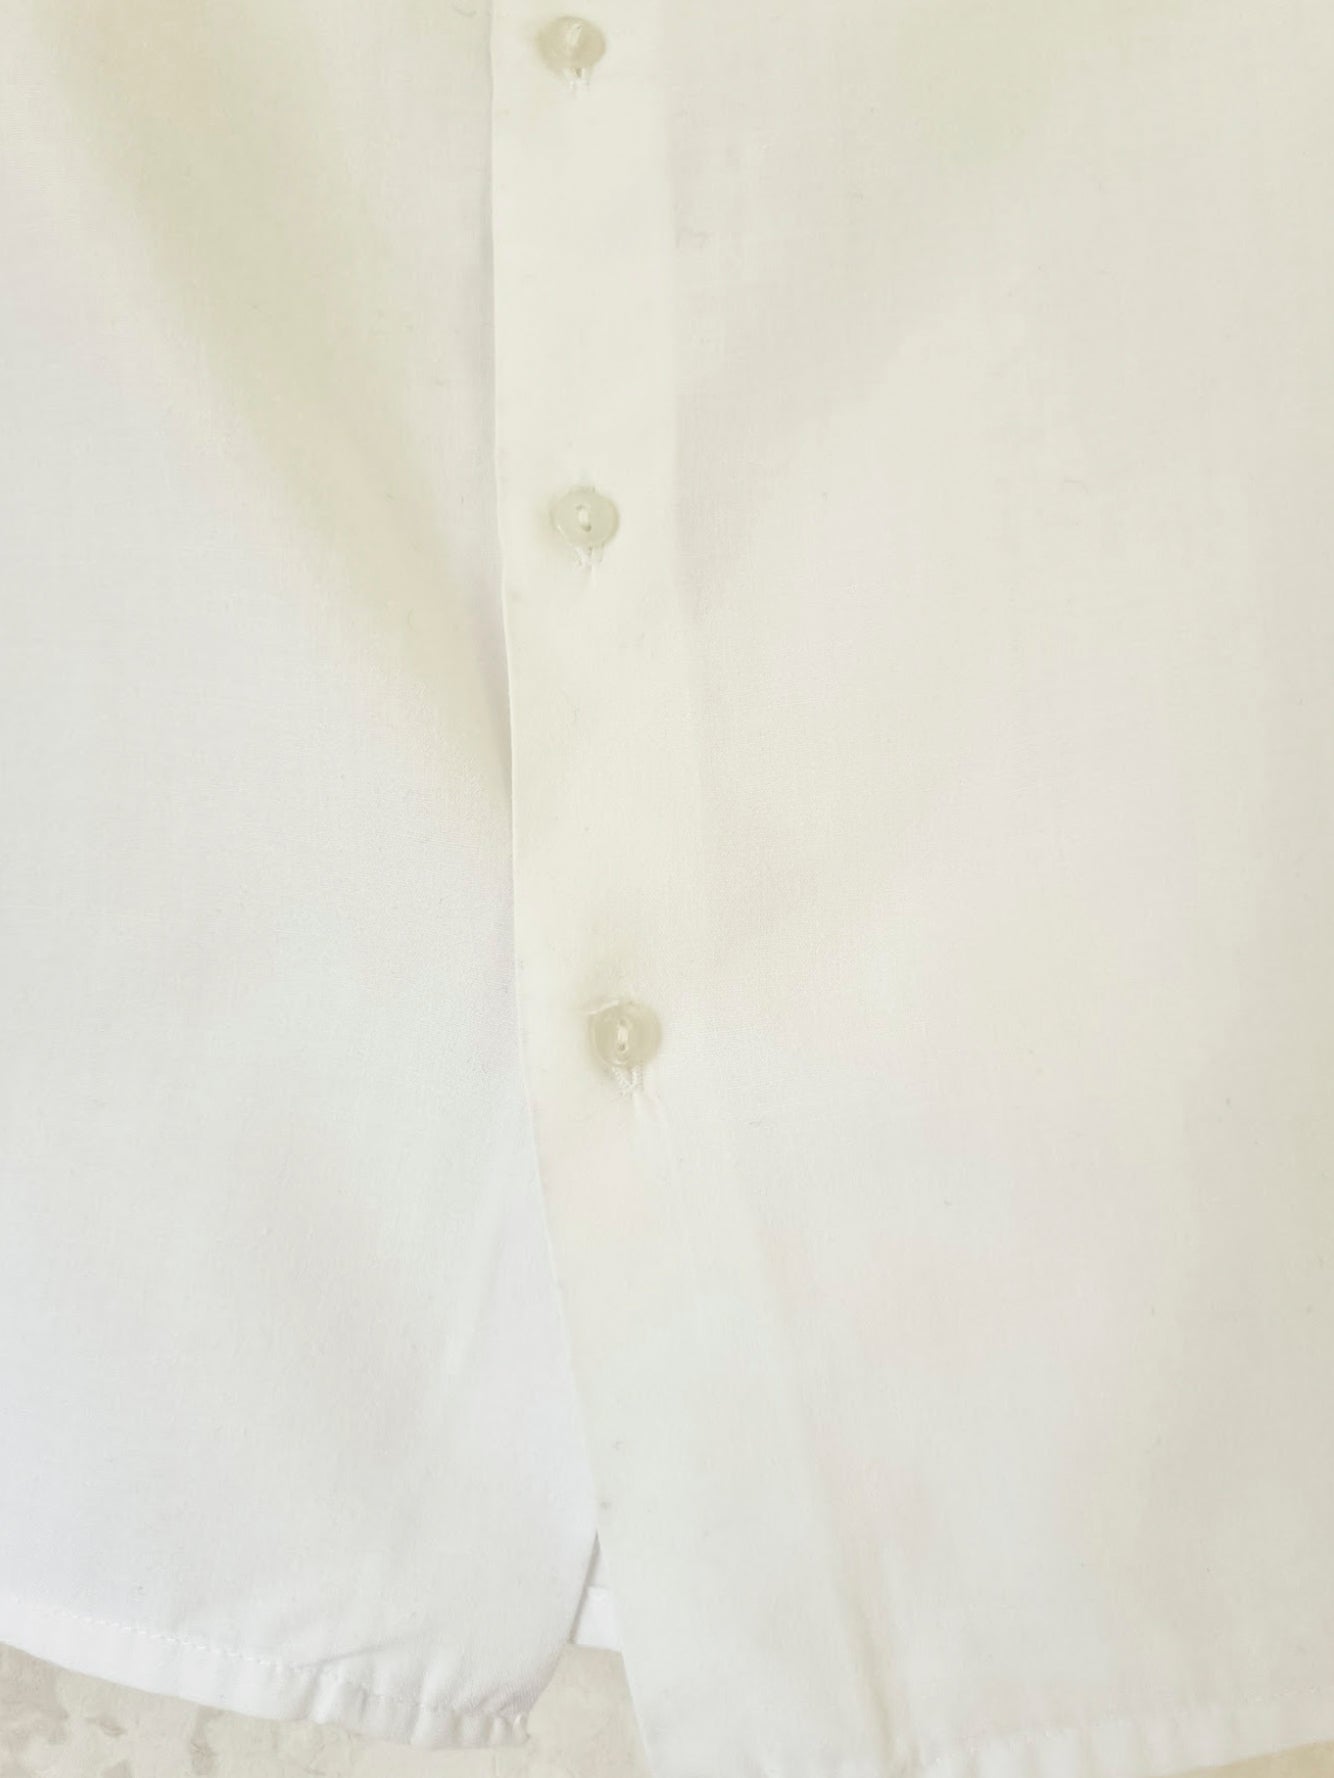 חולצה לבנה עם צווארון - oda-paam.com